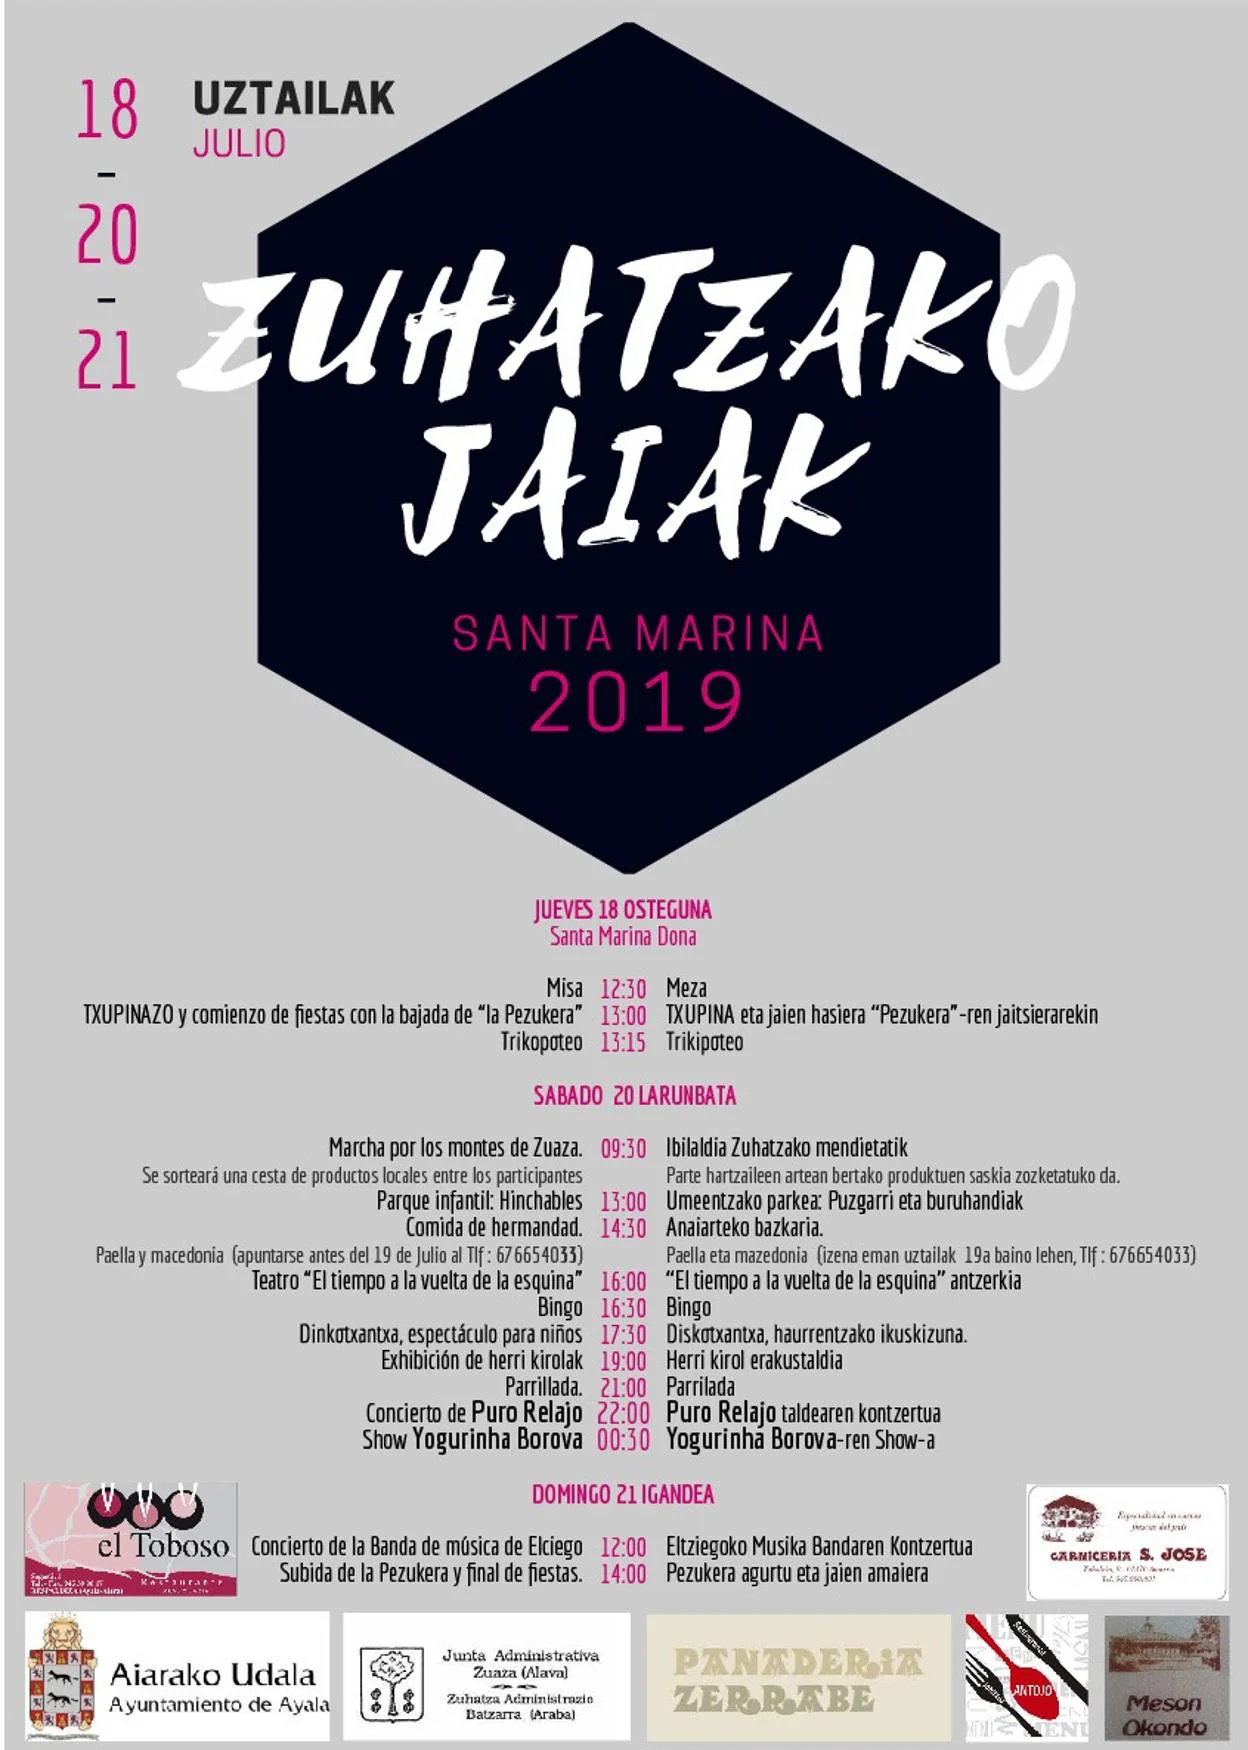 Programa de Fiestas de Zuaza 2019: Zuhatzako Santa Marina Jaiak